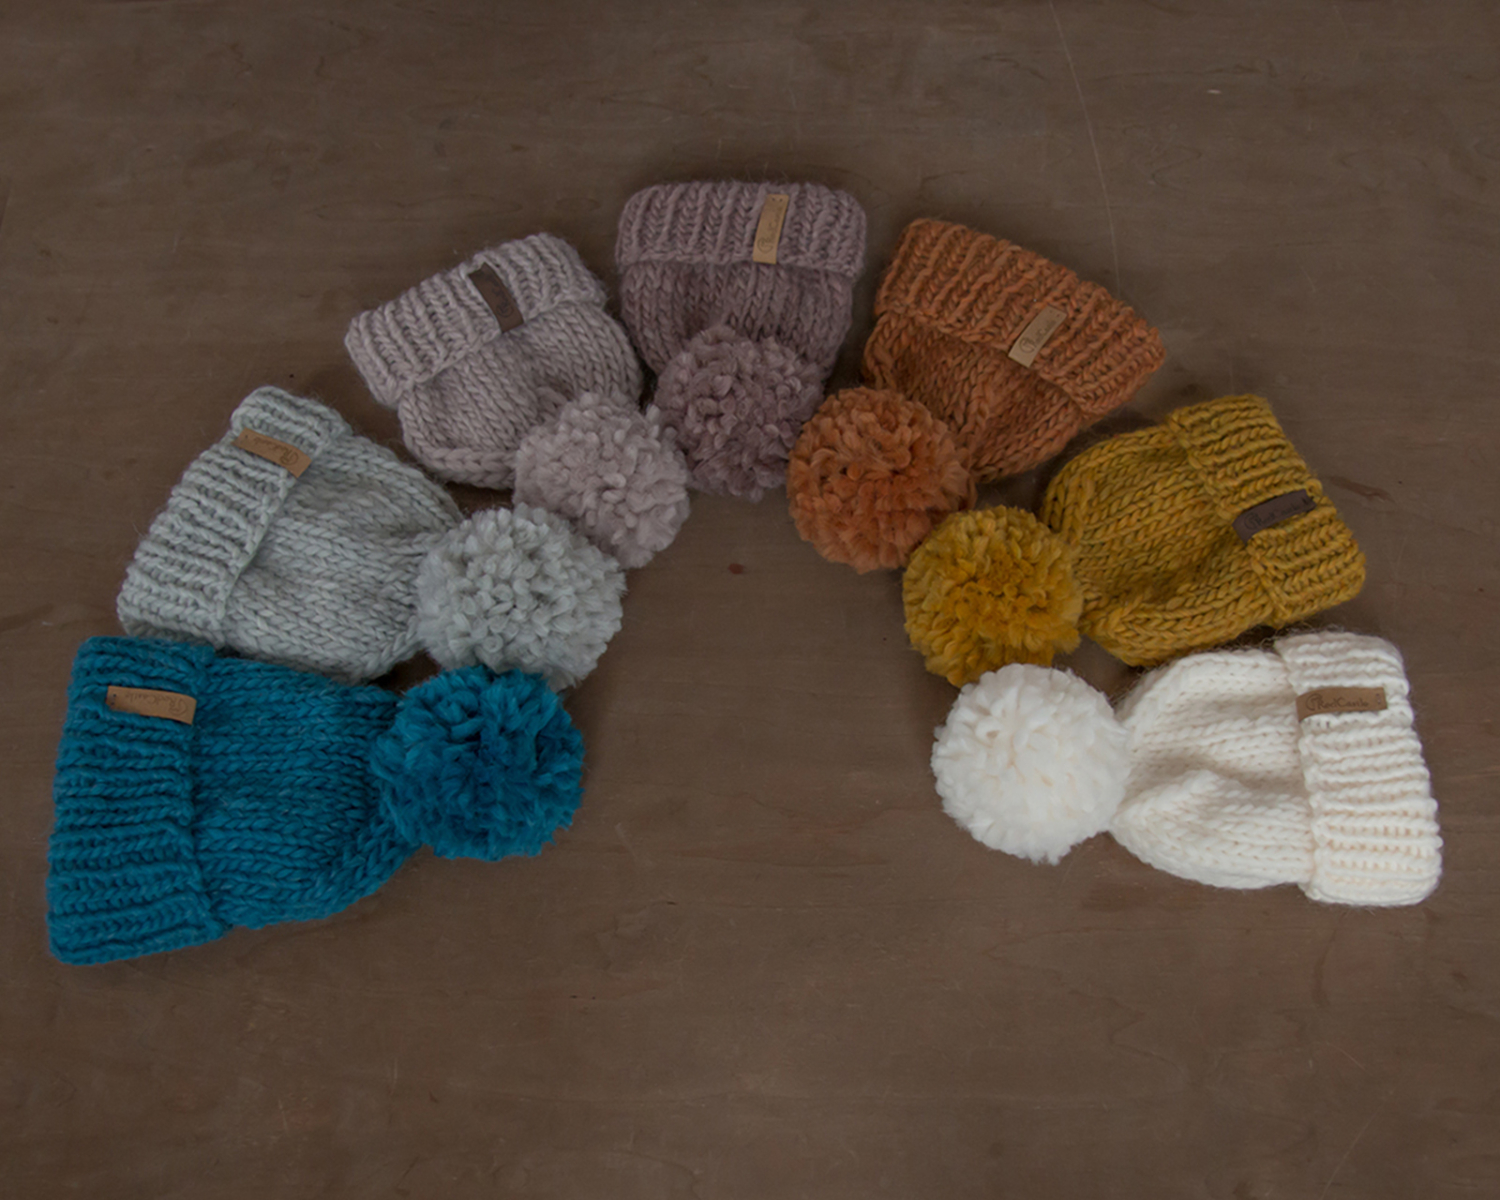 Design yourself - knit pom-pom hat